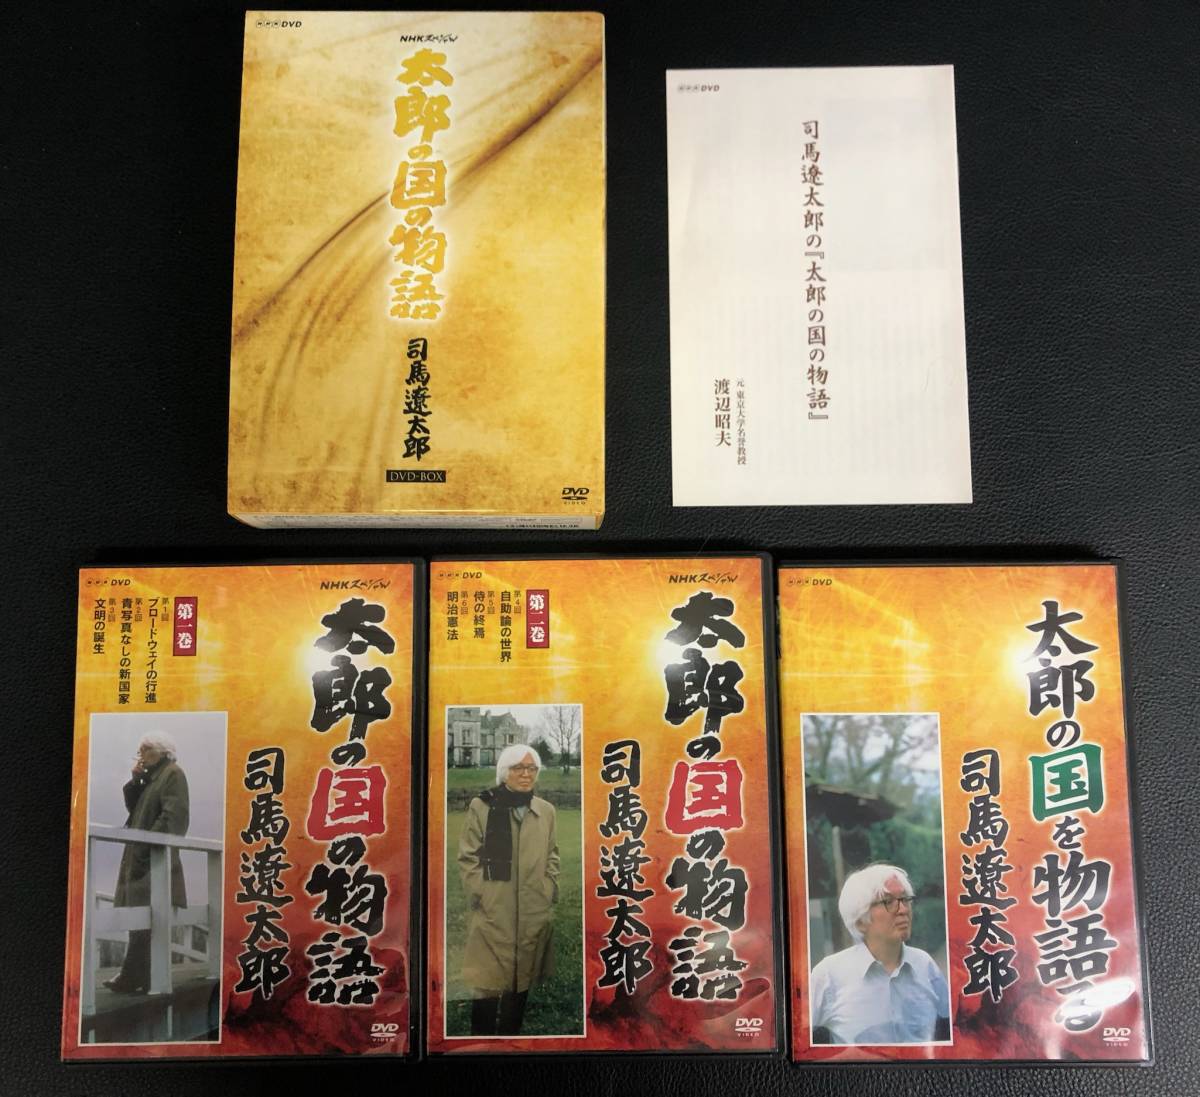 太郎の国の物語 司馬遼太郎 GNBW-7334 DVD 3枚セット DVDBOX テレビ 